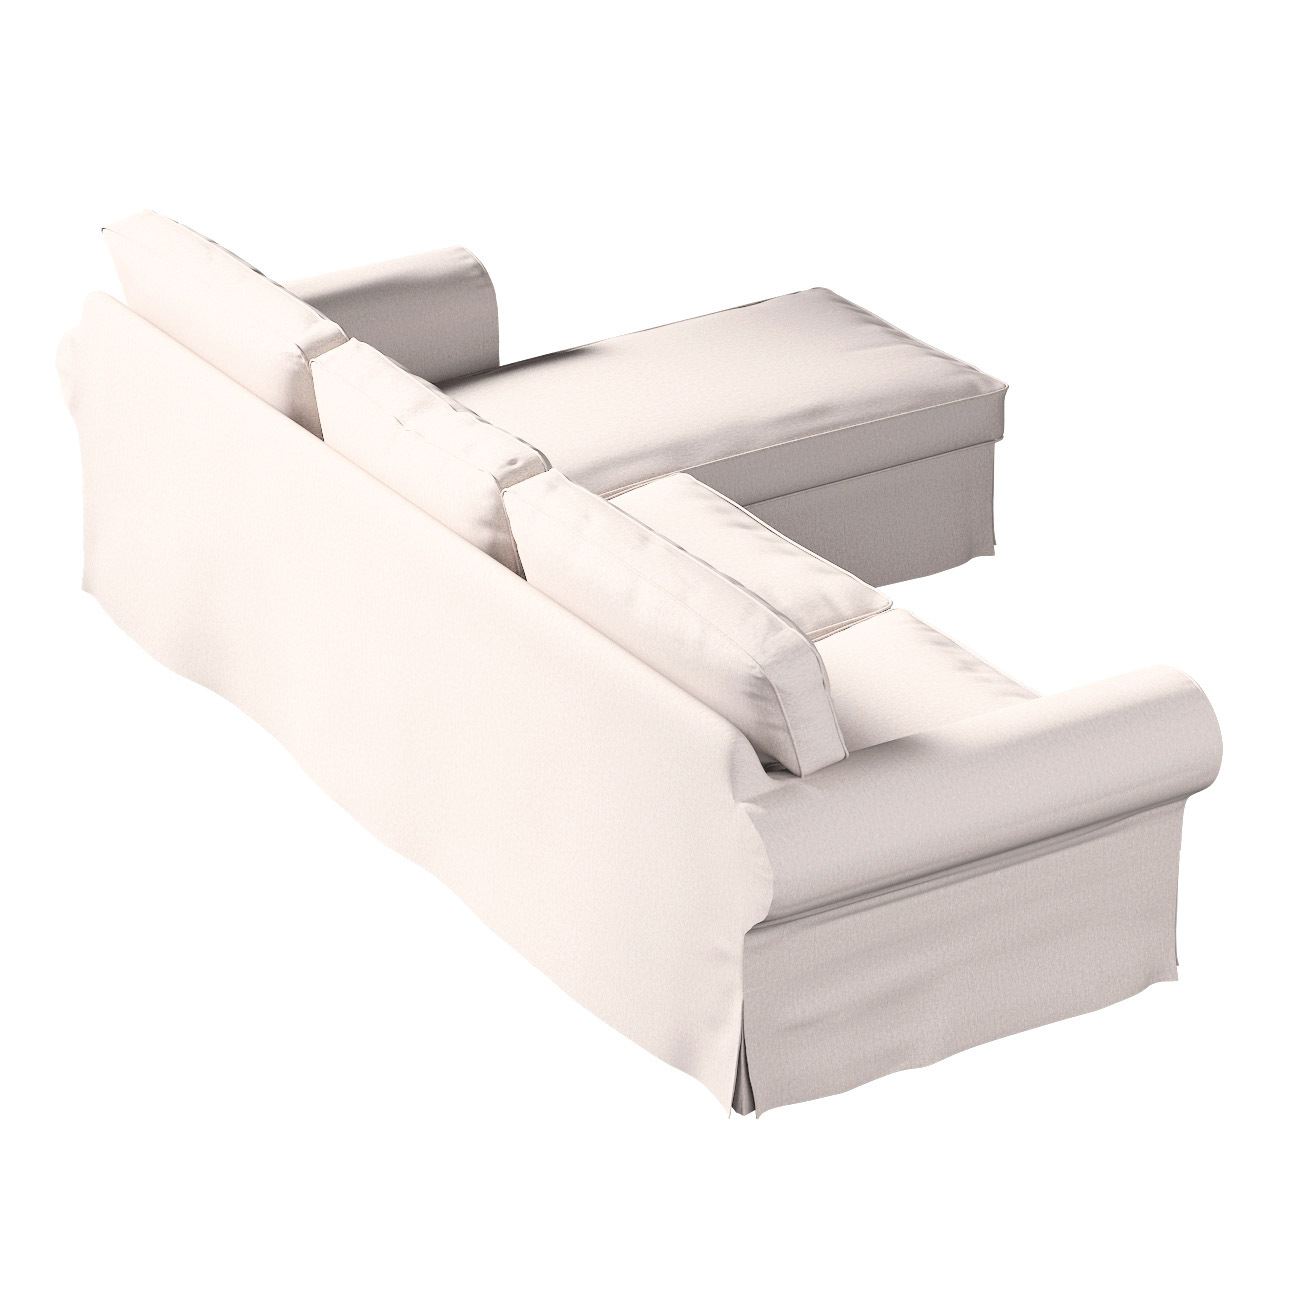 Bezug für Ektorp 2-Sitzer Sofa mit Recamiere, hellbeige, Ektorp 2-Sitzer So günstig online kaufen